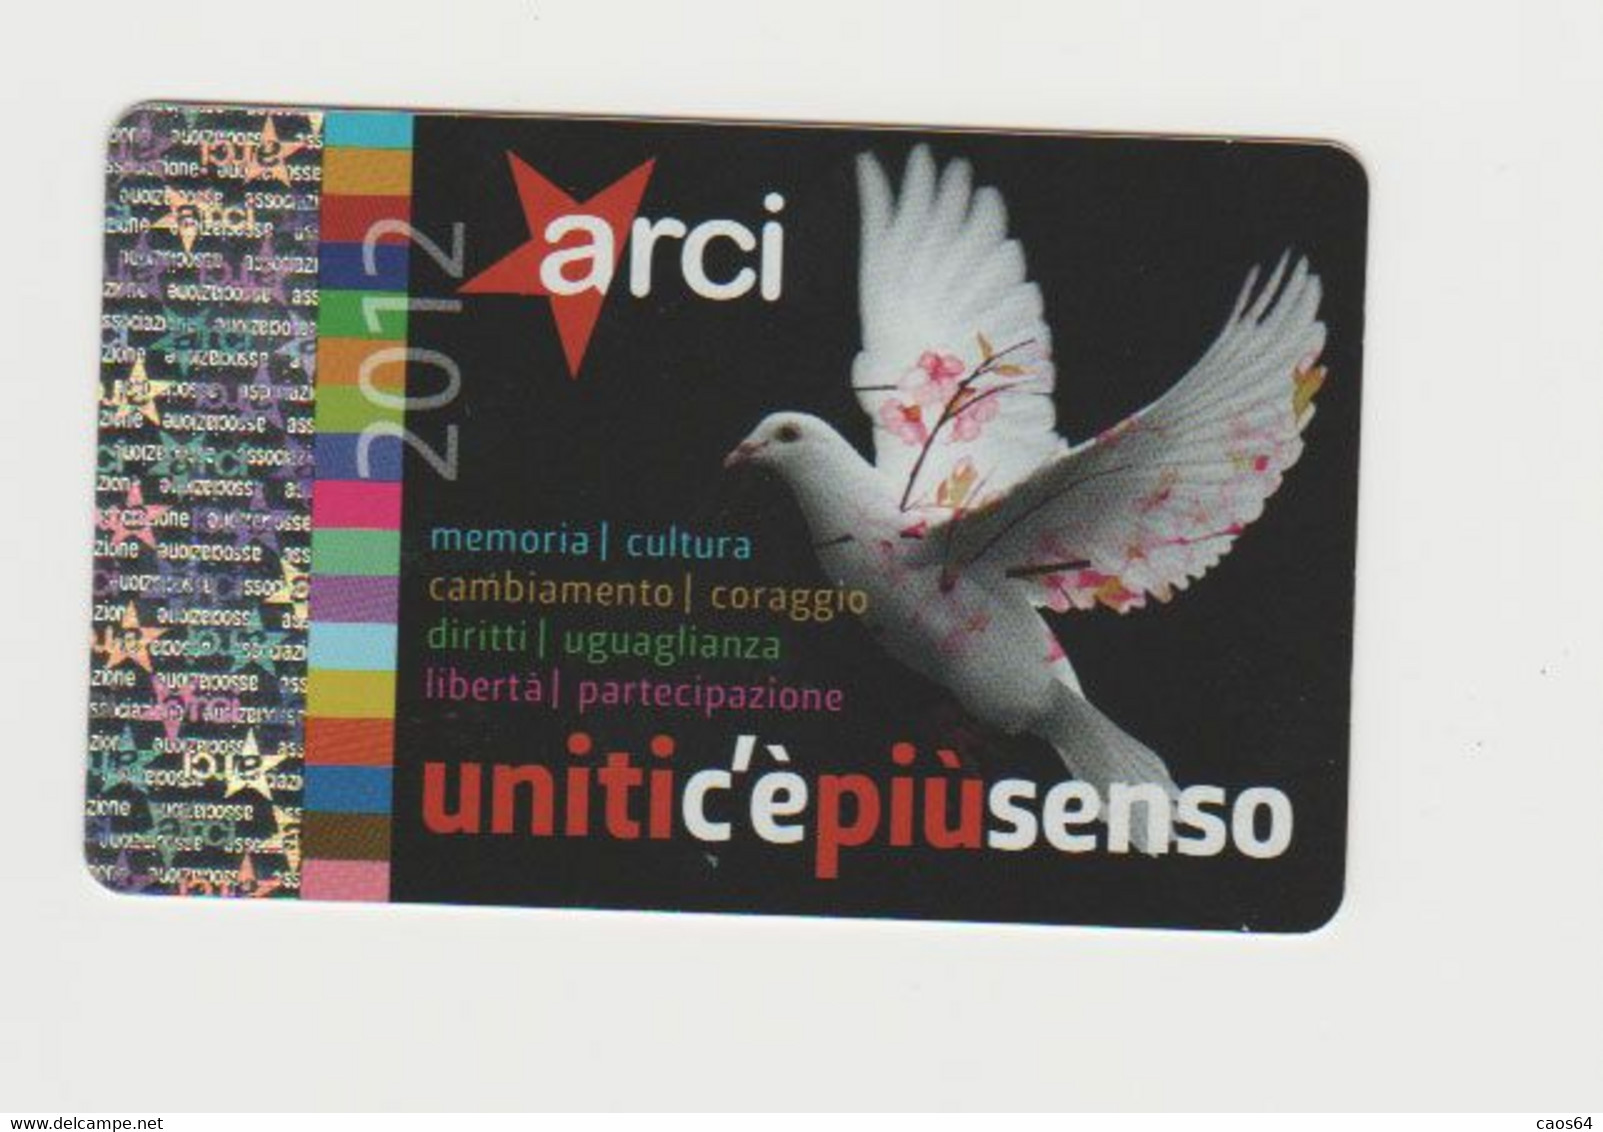 Tessera Arci 2012 - Membership Cards